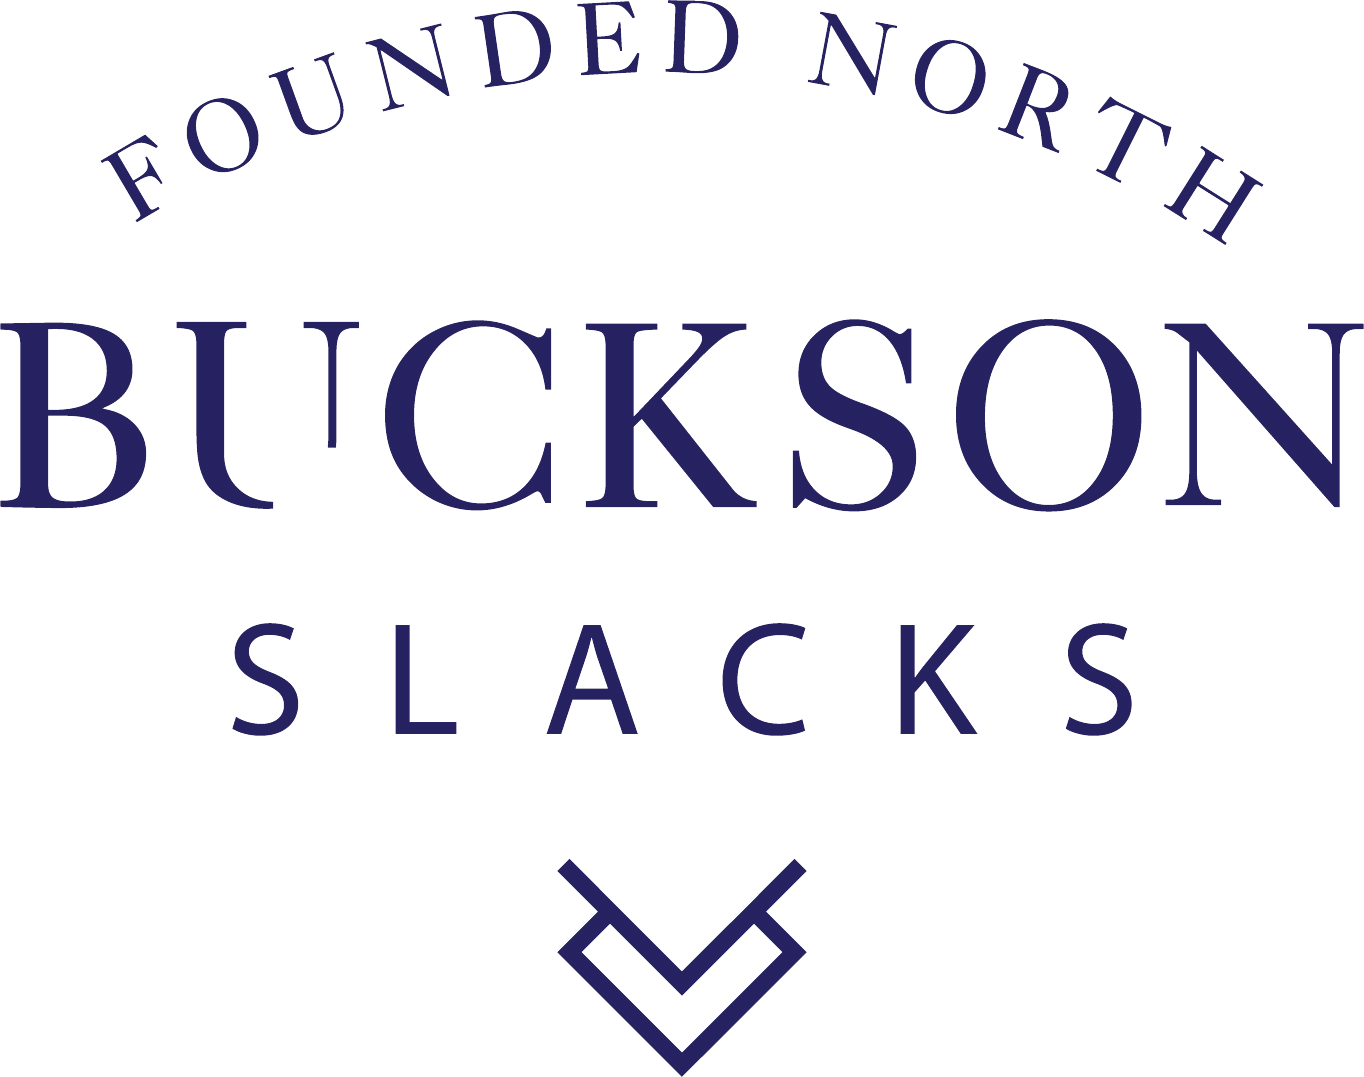 Buckson's Slacks